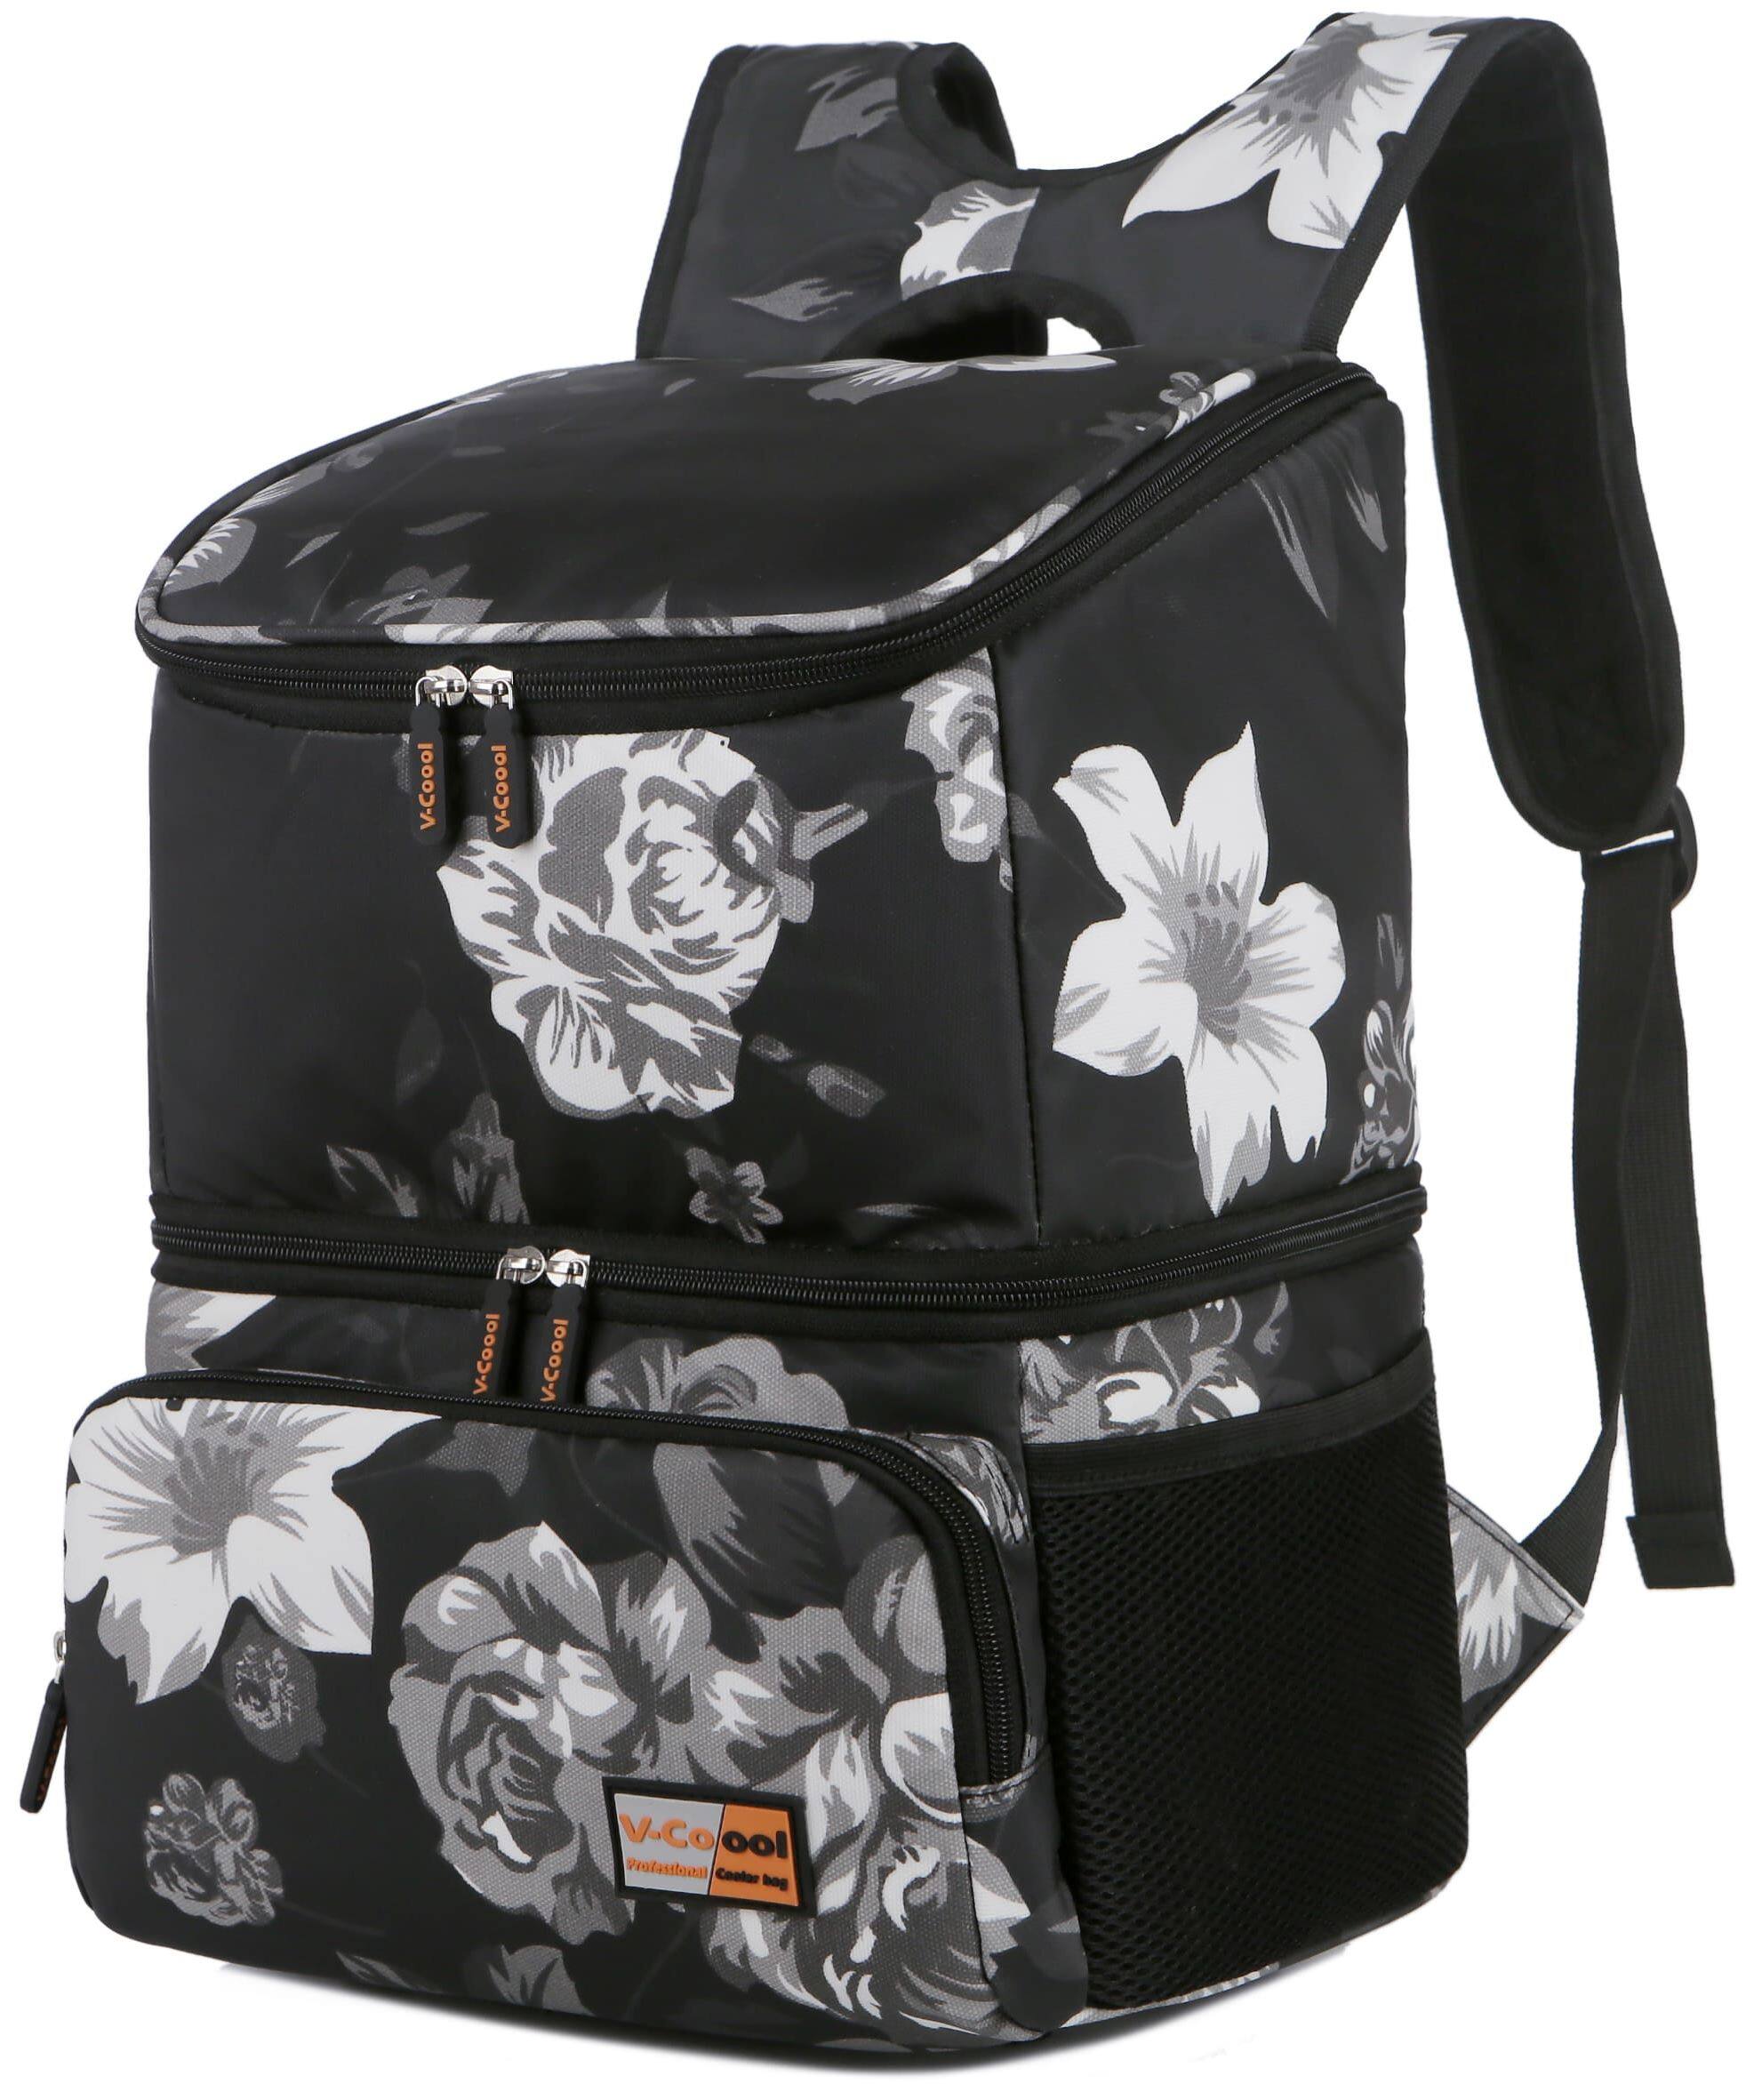 กระเป๋าเก็บความเย็น V-coool รุ่น snowbear cooler bag ใบใหญ่ กระเป๋าเก็บนมแม่ กระเป๋าใส่ขวดนม กระเป๋าเก็บอุณหภูมิ